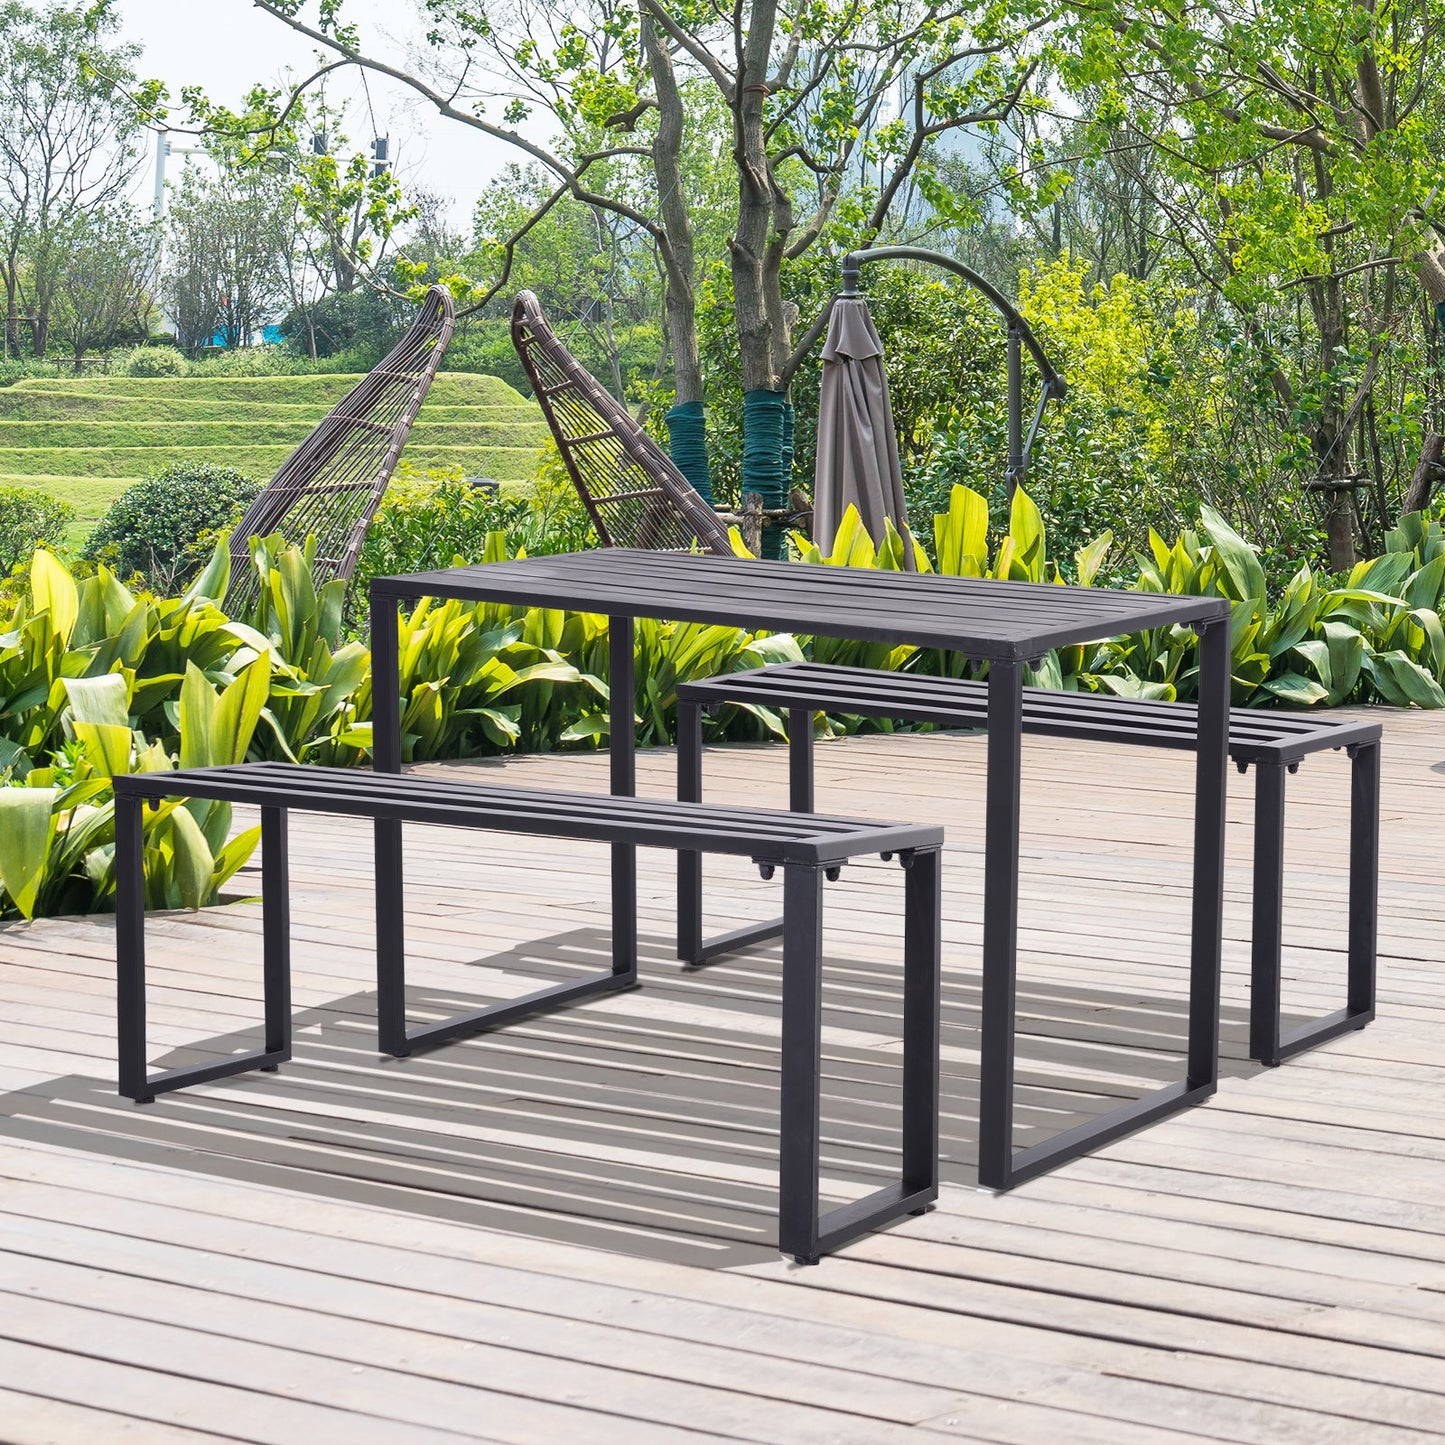 Outsunny 3 Pcs Metal Table W/Bench Set-Black